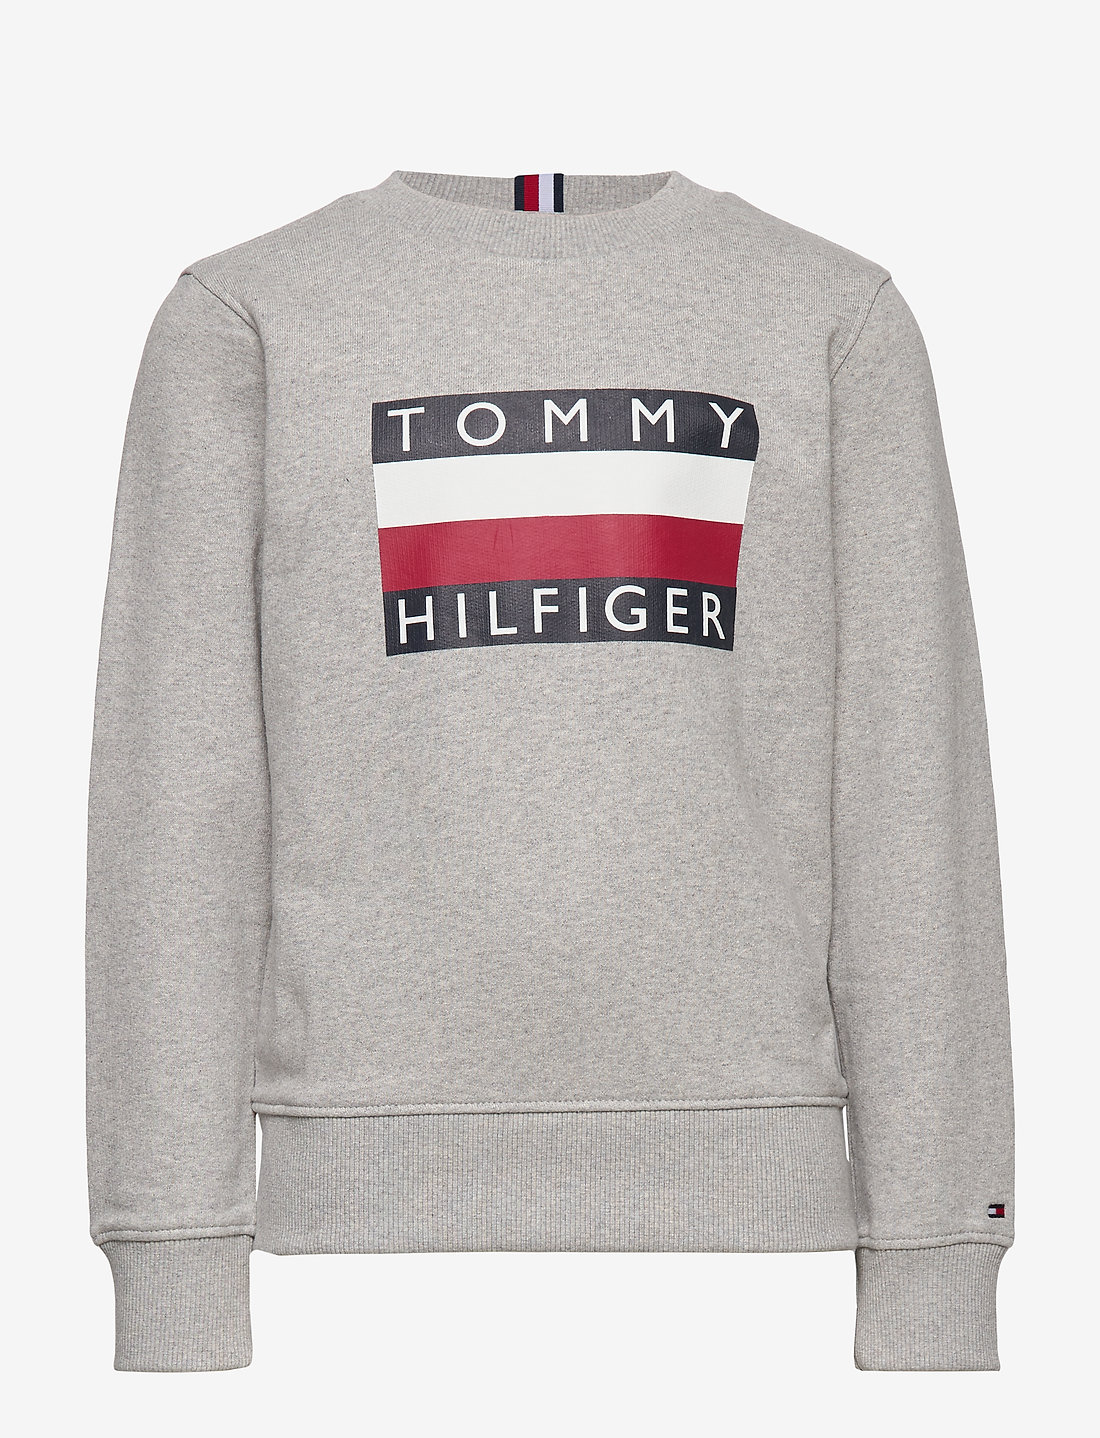 Tommy Hilfiger Essential Hilfiger Sweatshirt - Sweatshirts